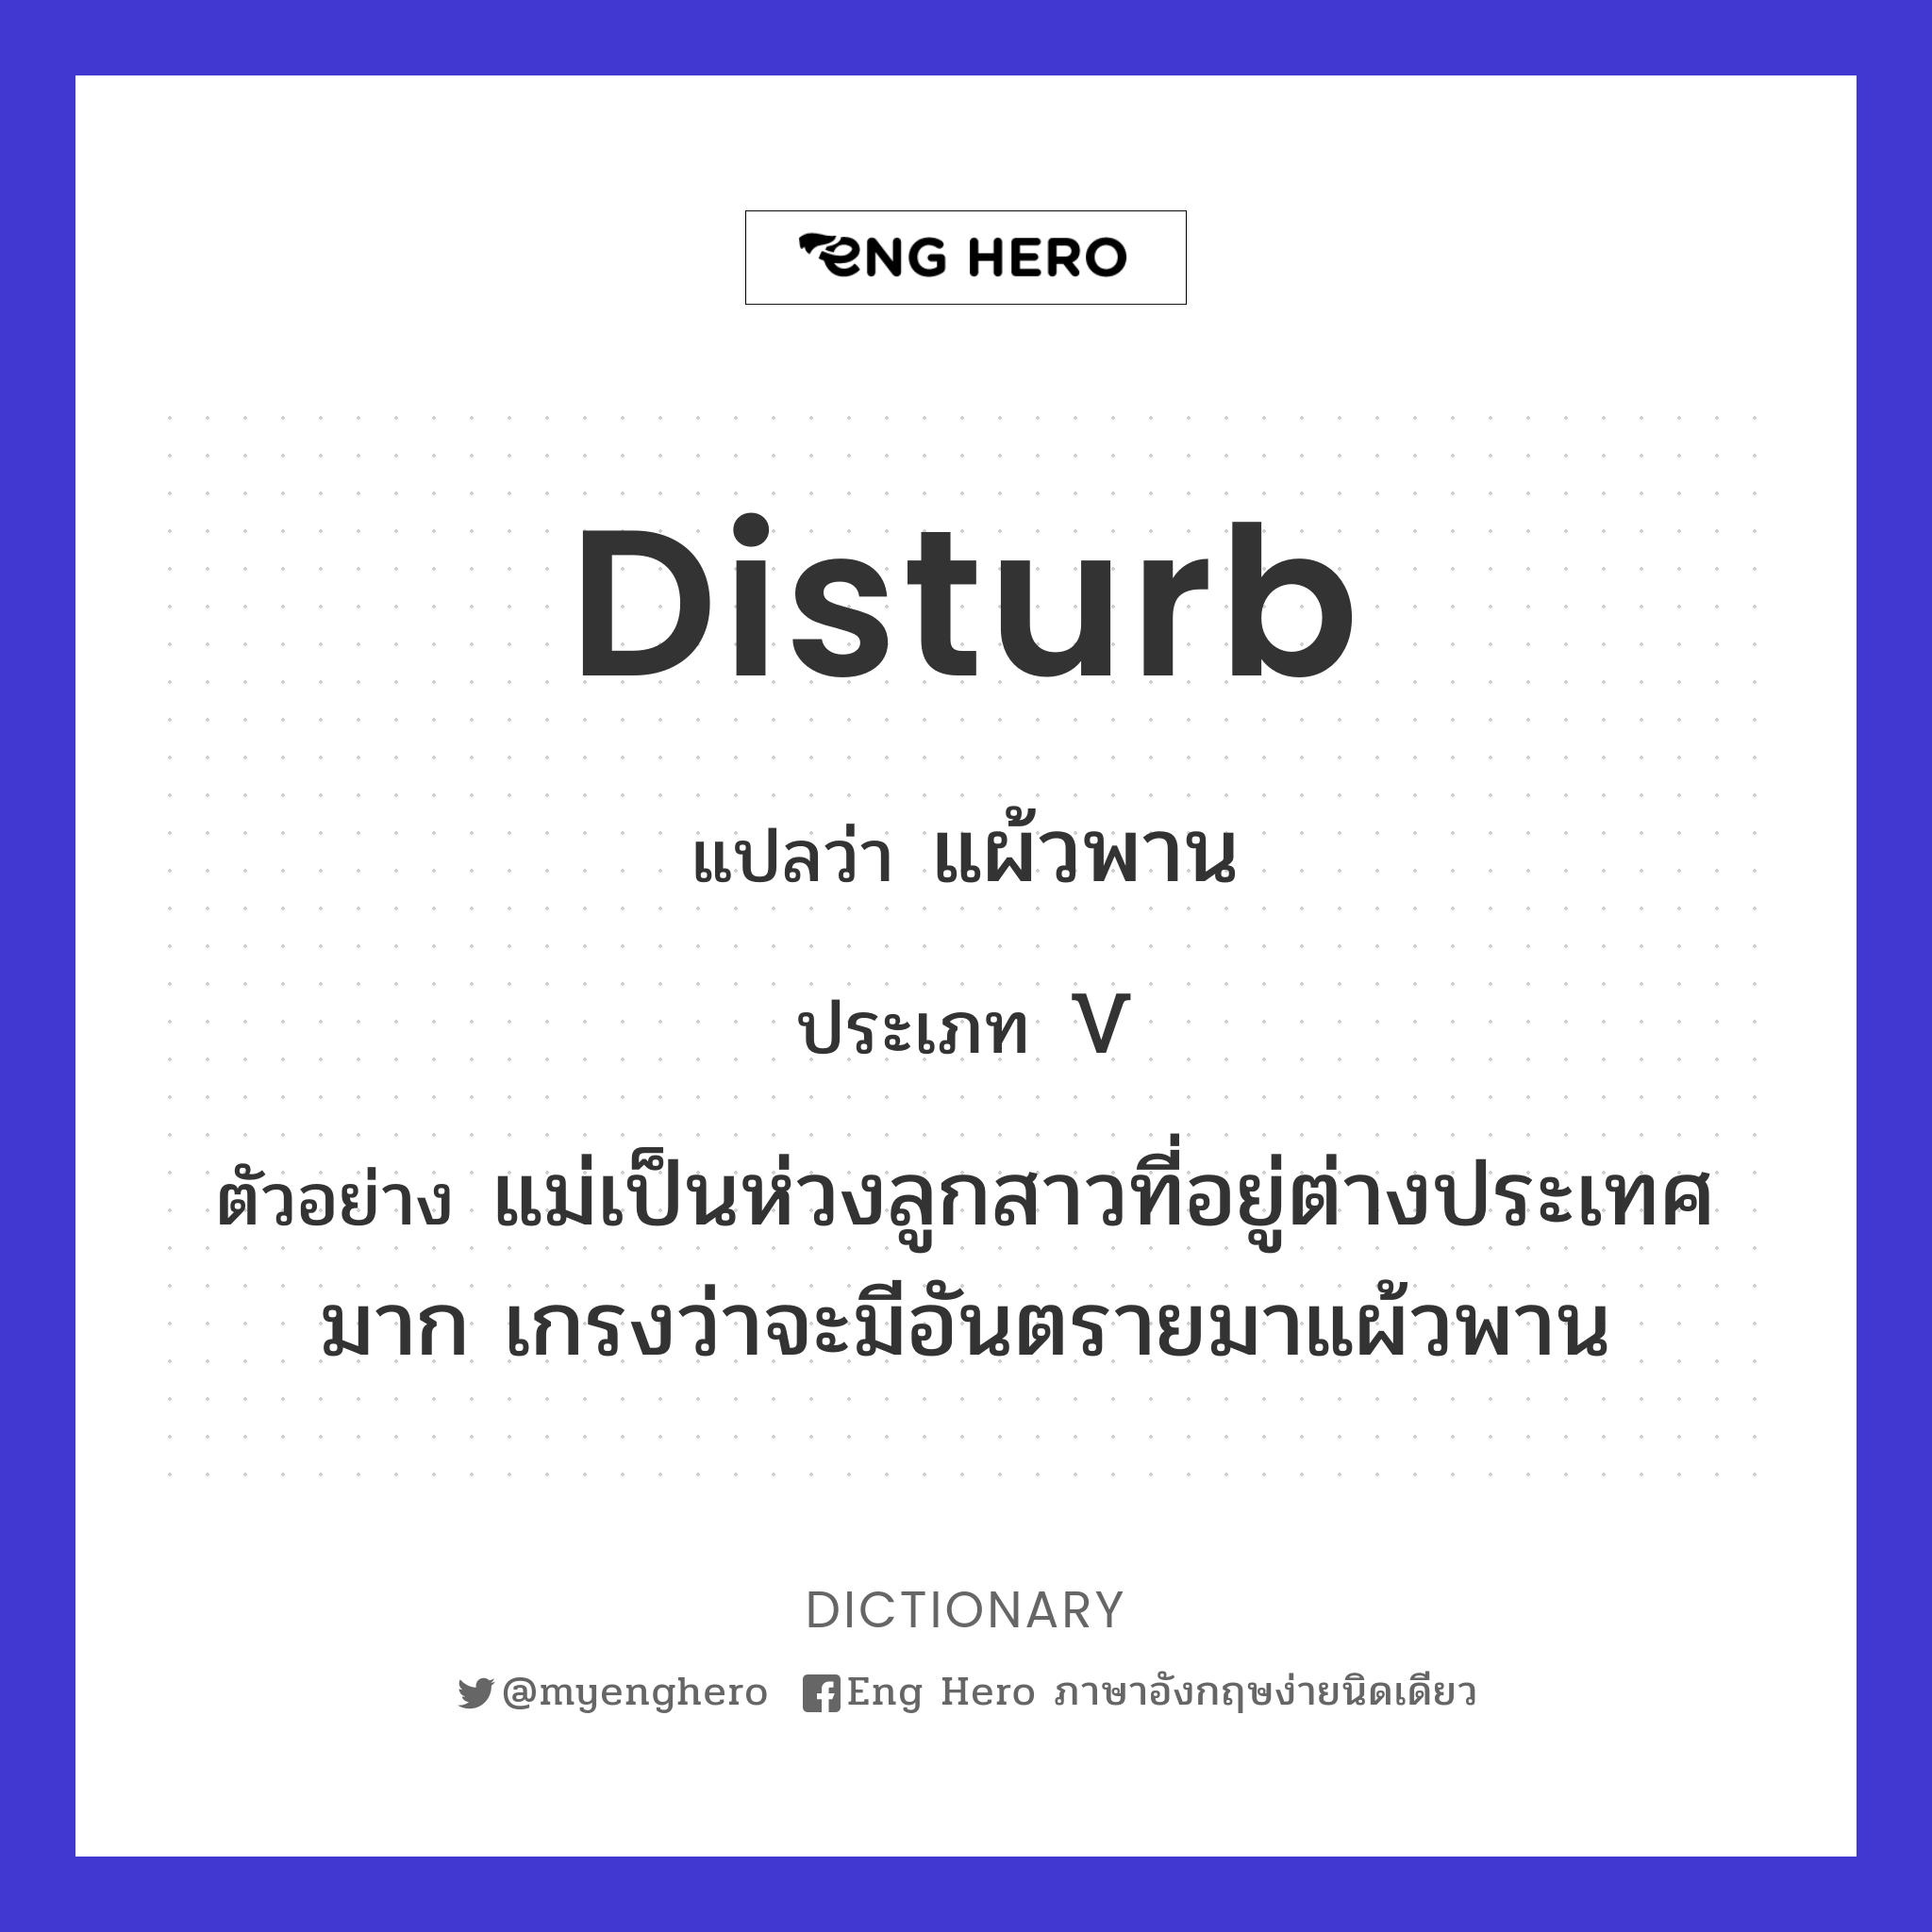 disturb